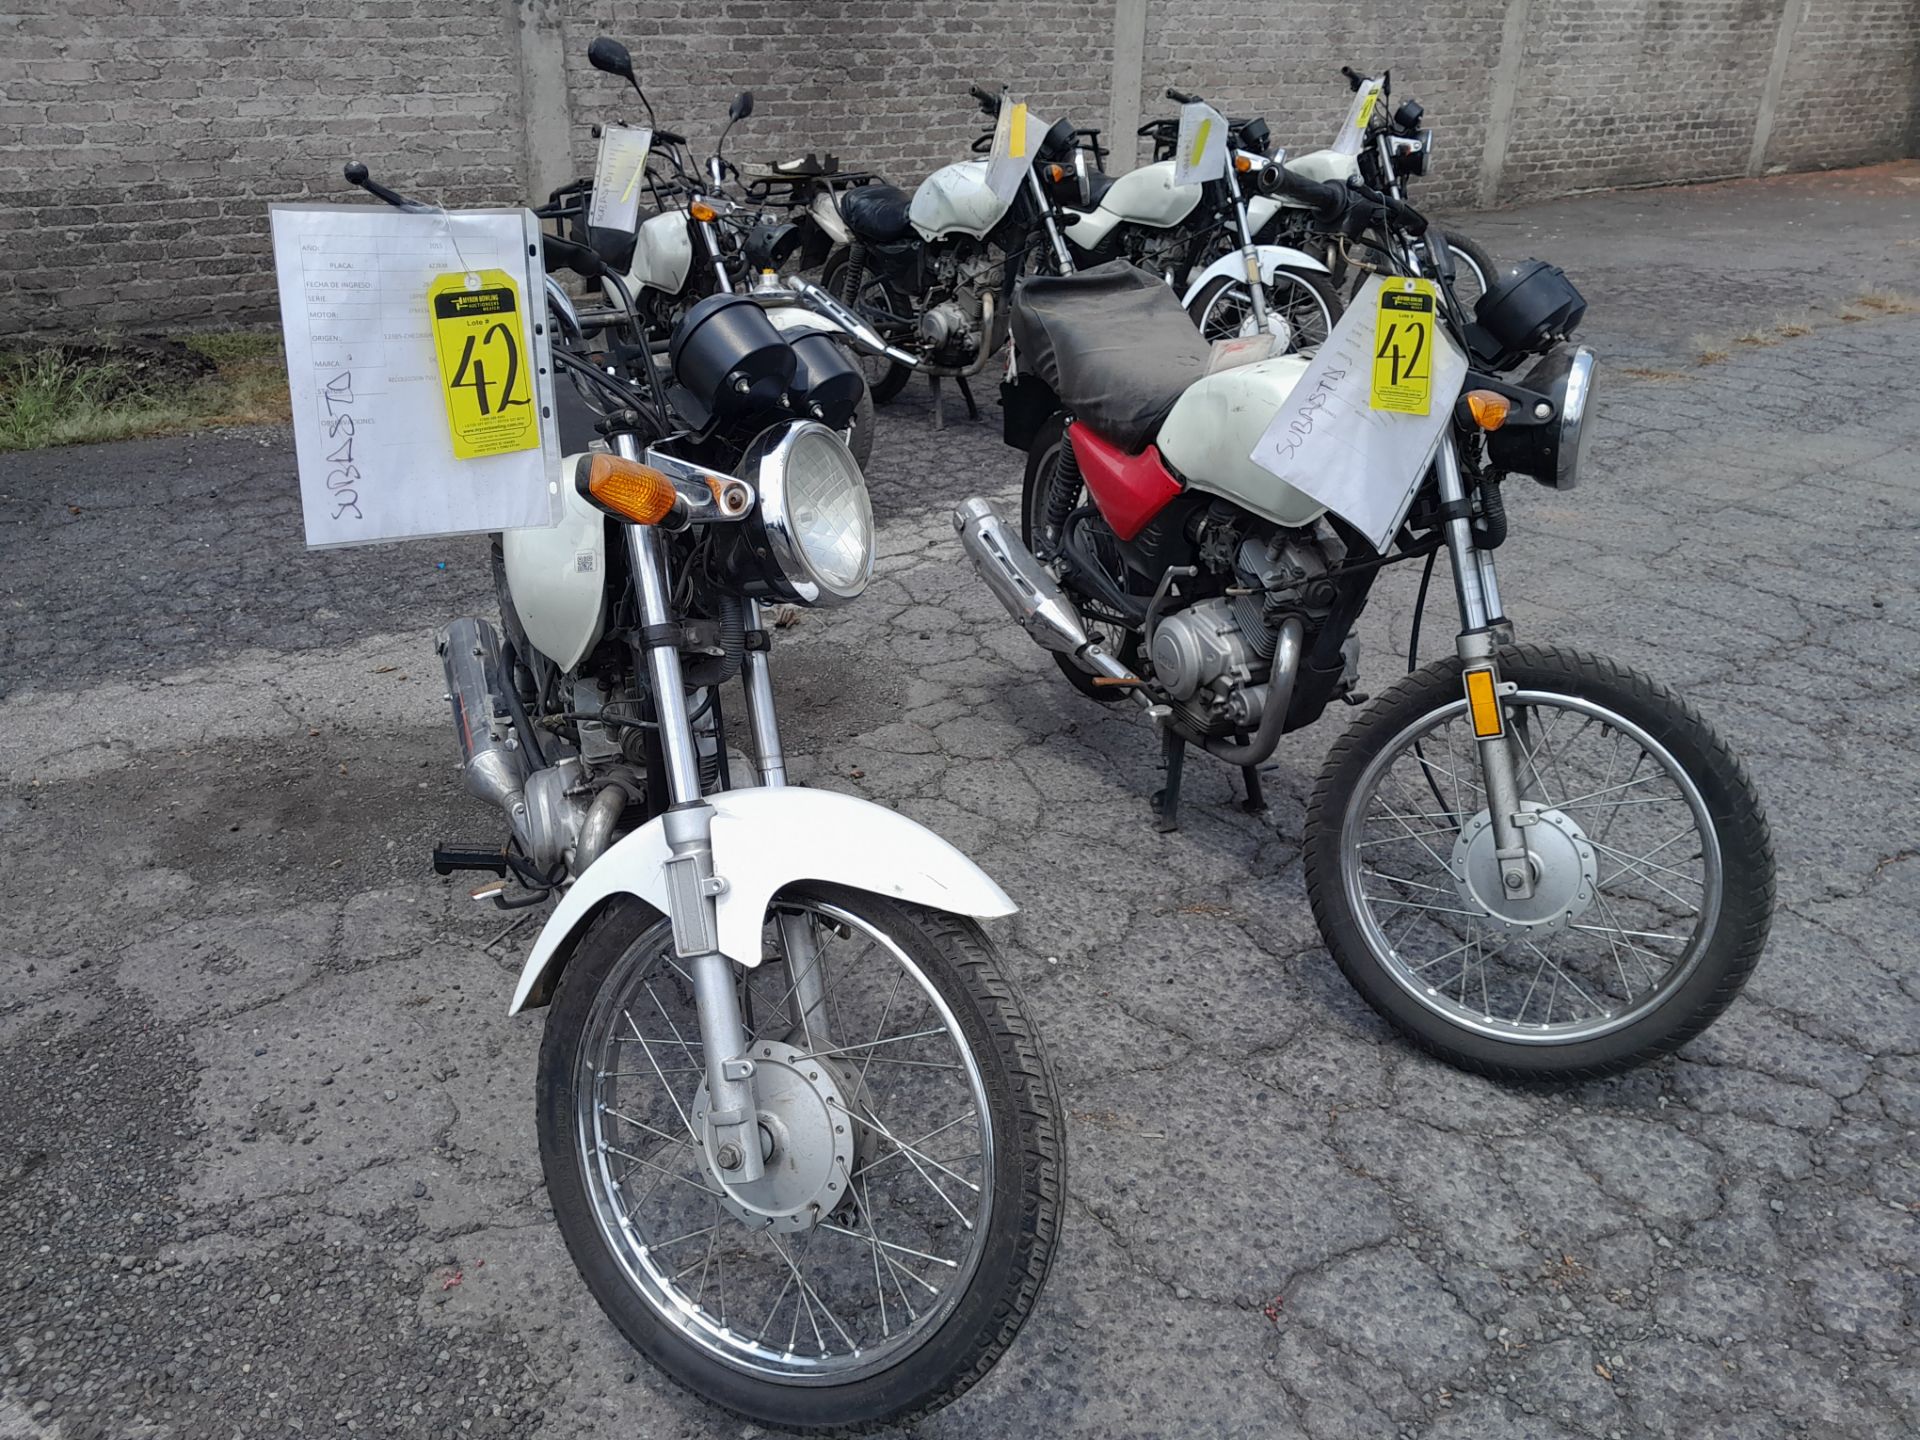 Lote de 2 Motocicletas contiene: 1 Motocicleta de trabajo usada Marca Yamaha YB 125, Modelo 2016, N - Image 2 of 11